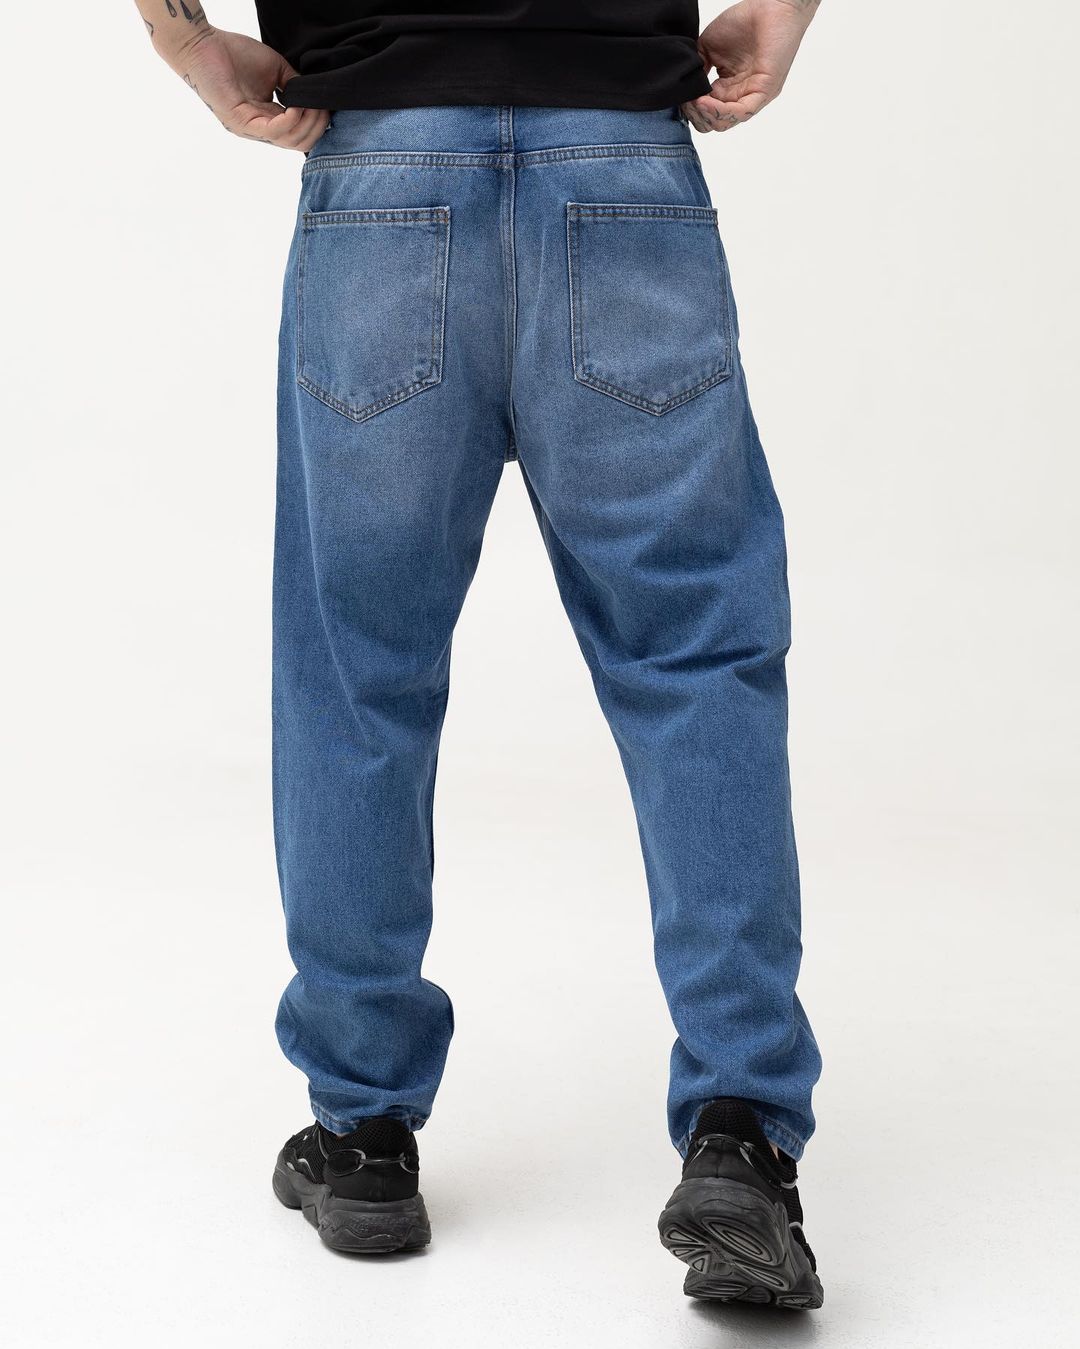 Чоловічі сині джинси BEZET базові з вишивкою - Фото 3